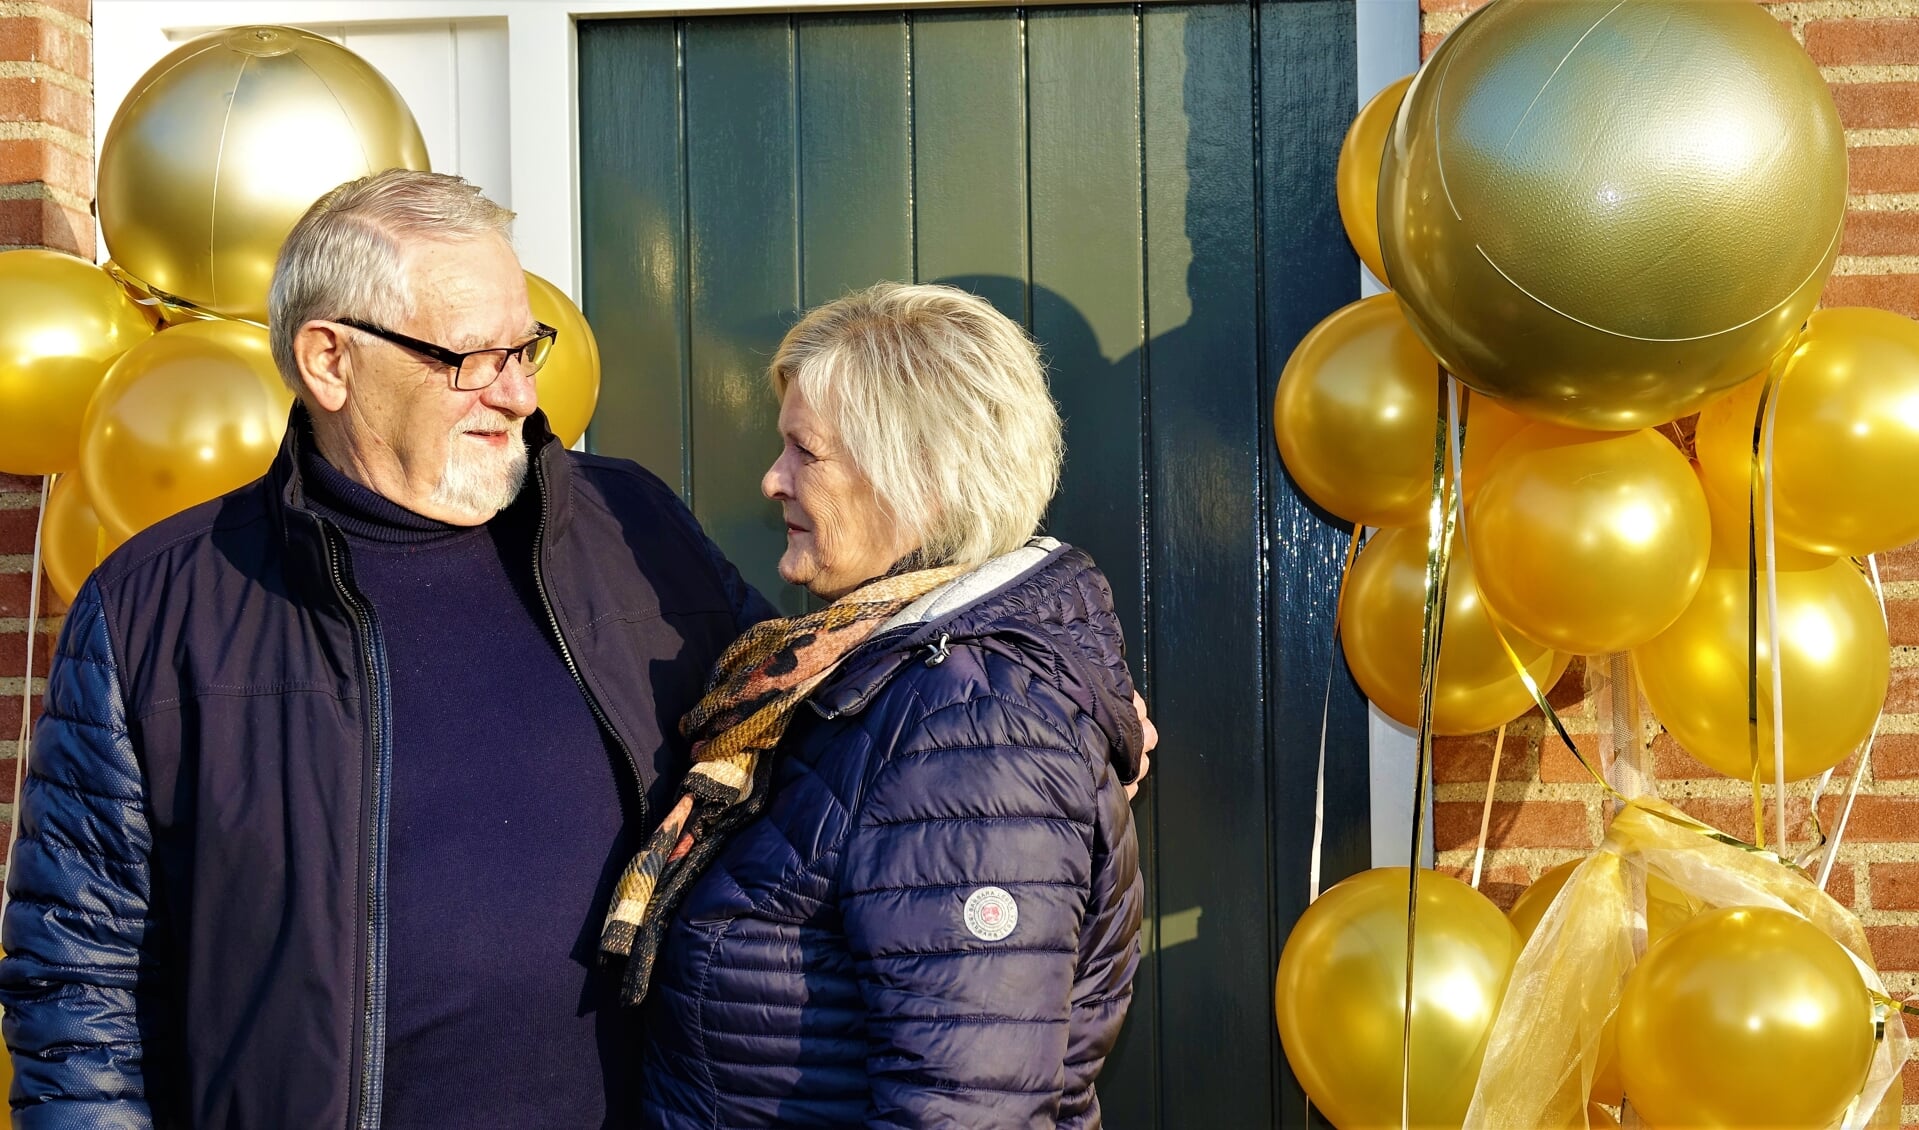 Sraar en Mien Smits 50 jaar getrouwd 